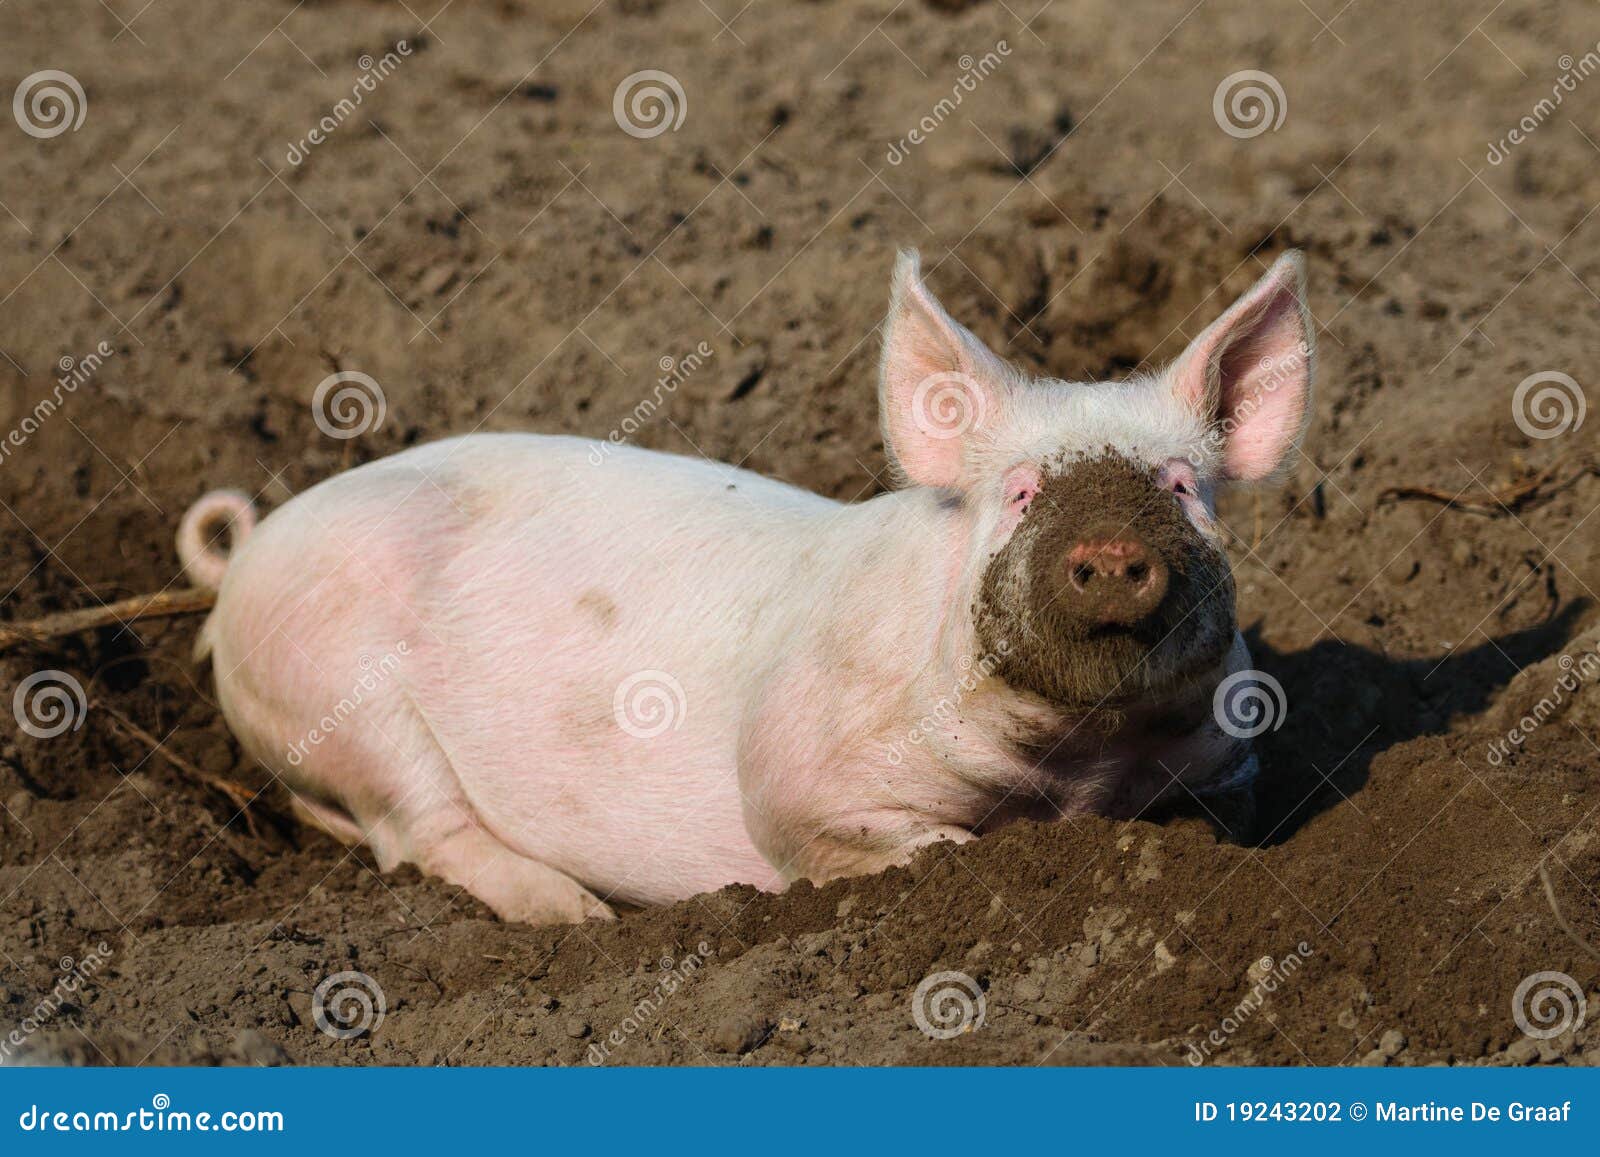 happy biological pig